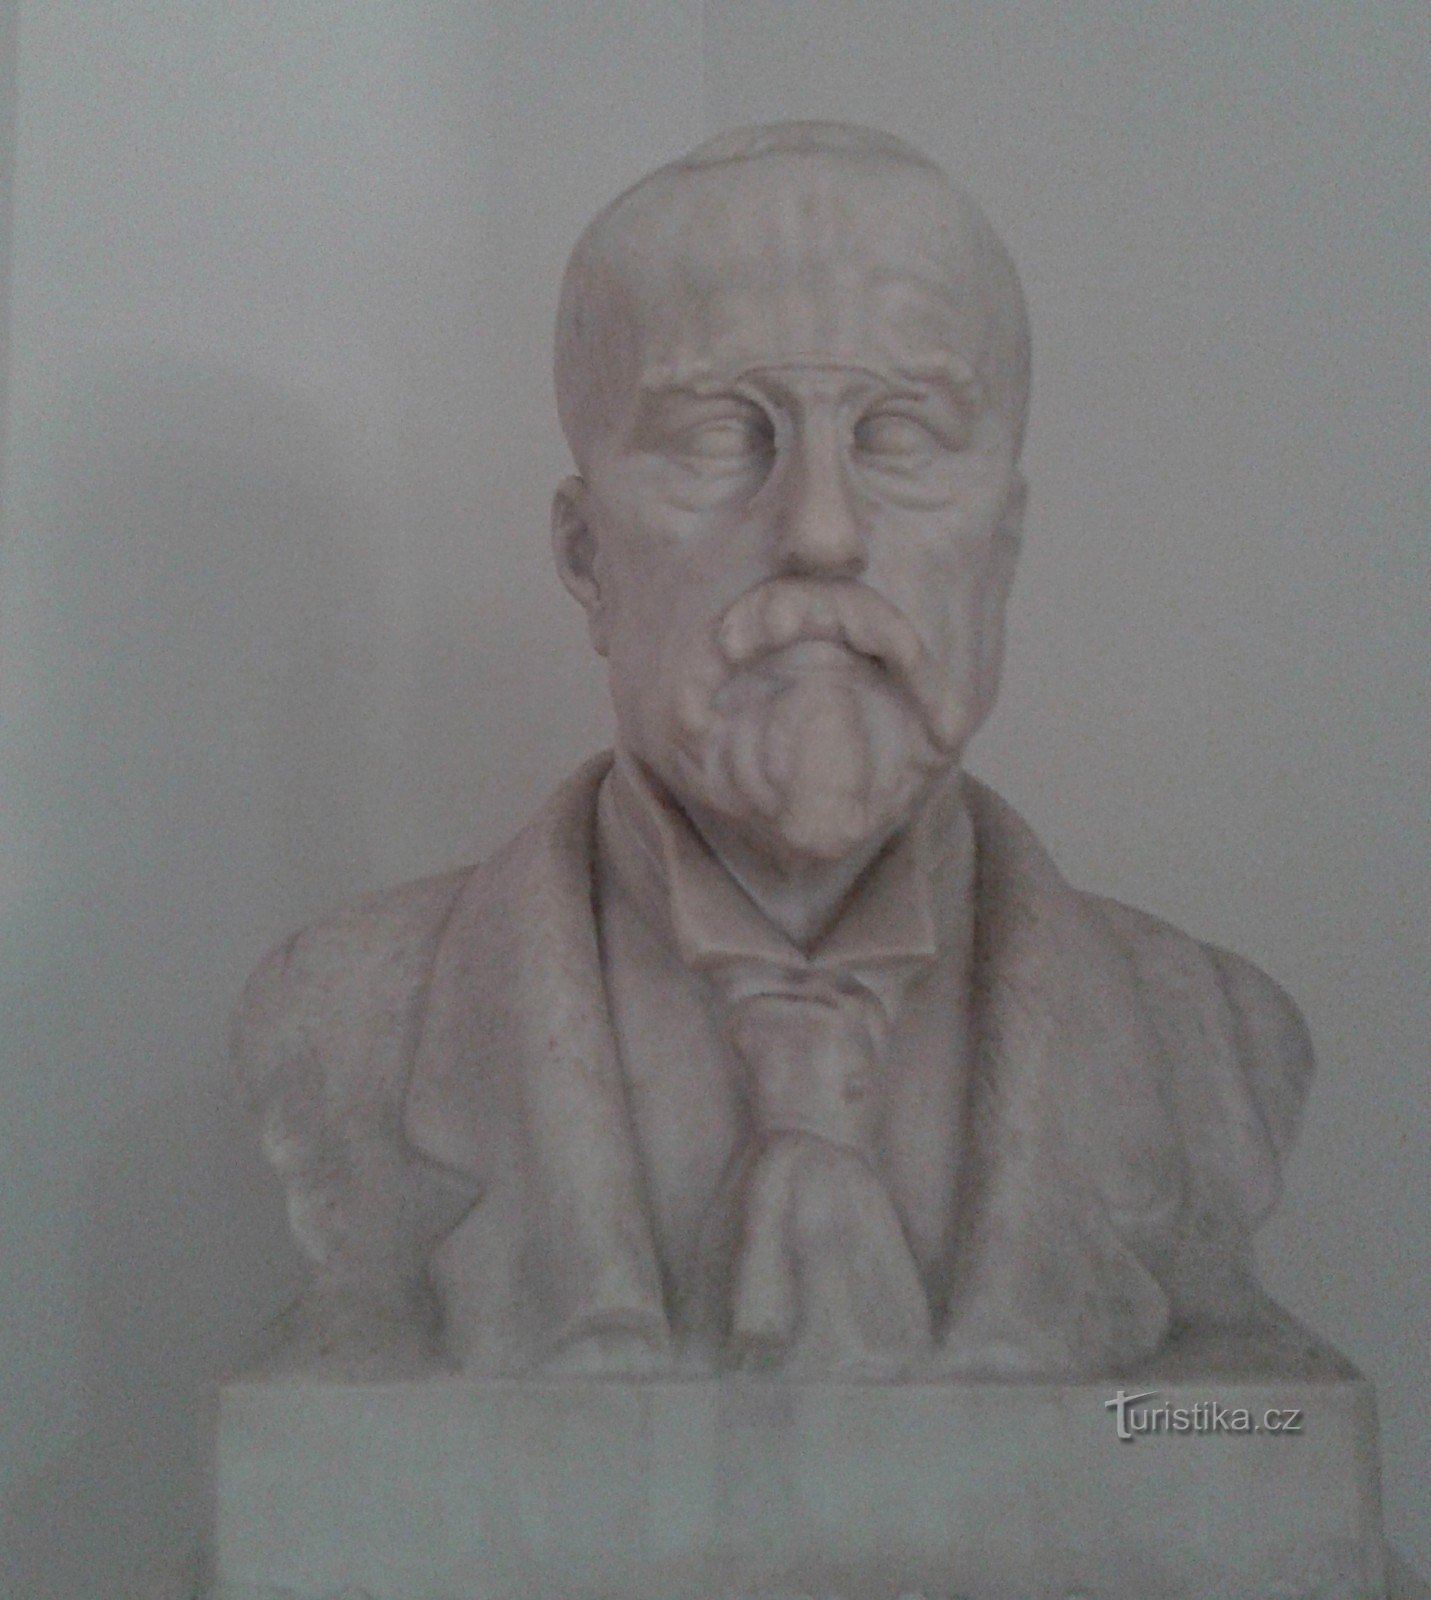 Bust vultur al lui Masaryk în holul de la intrare